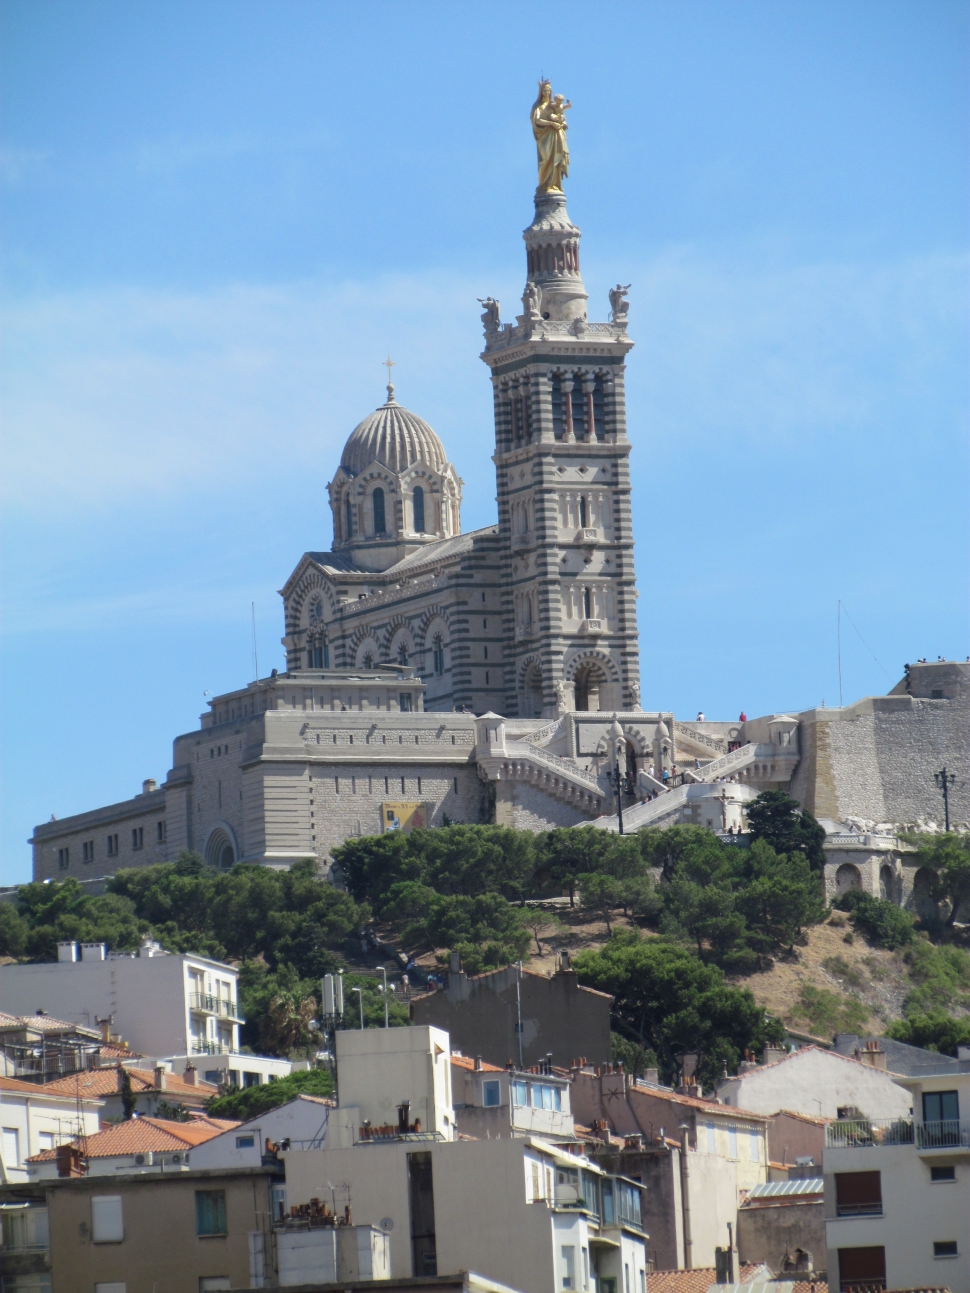 A román-bizánci bazilika Marseille fő ékessége (Fotó: Mentusz Károly)